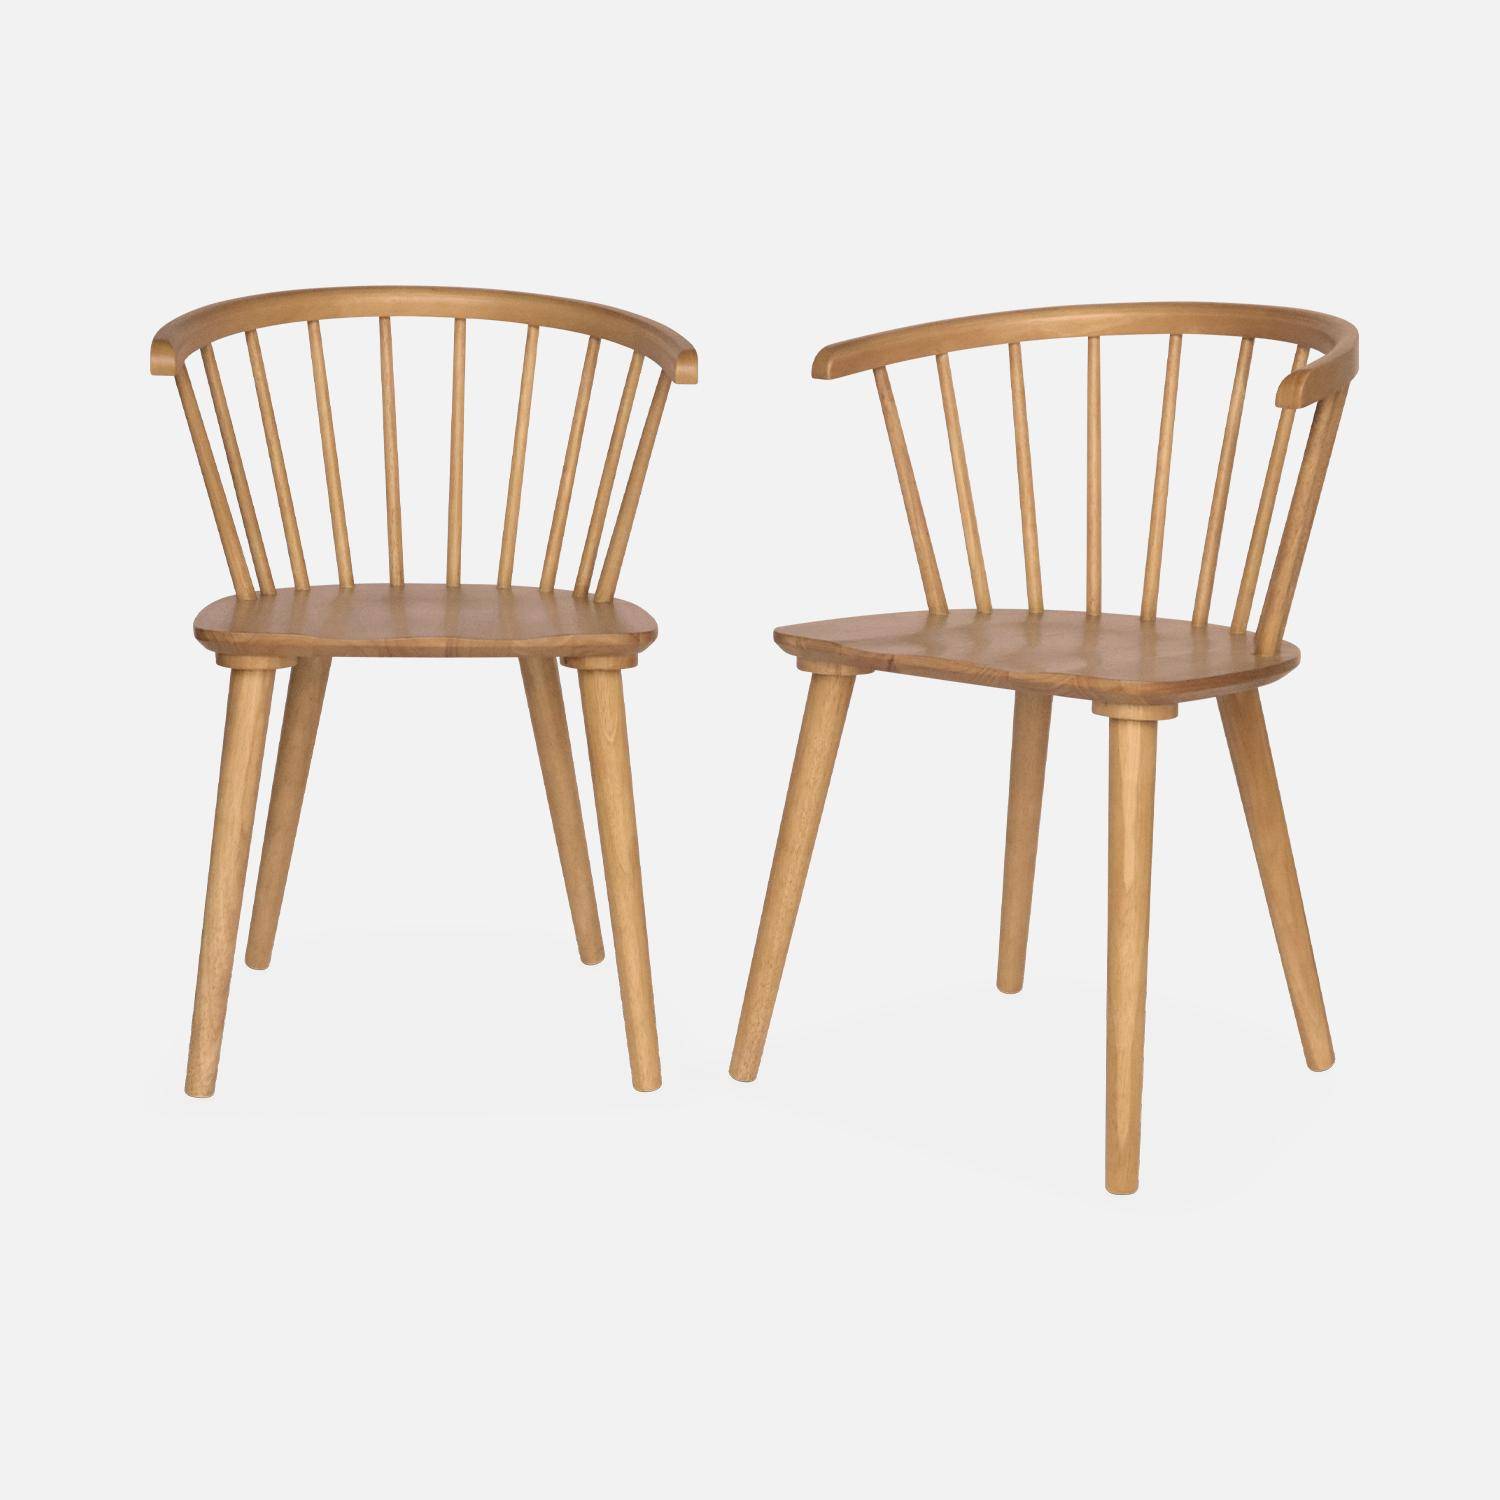 Lote de 2 sillas de bar de madera natural y contrachapada, Paula, An 51 x Pr 53 x Al 75cm Photo3